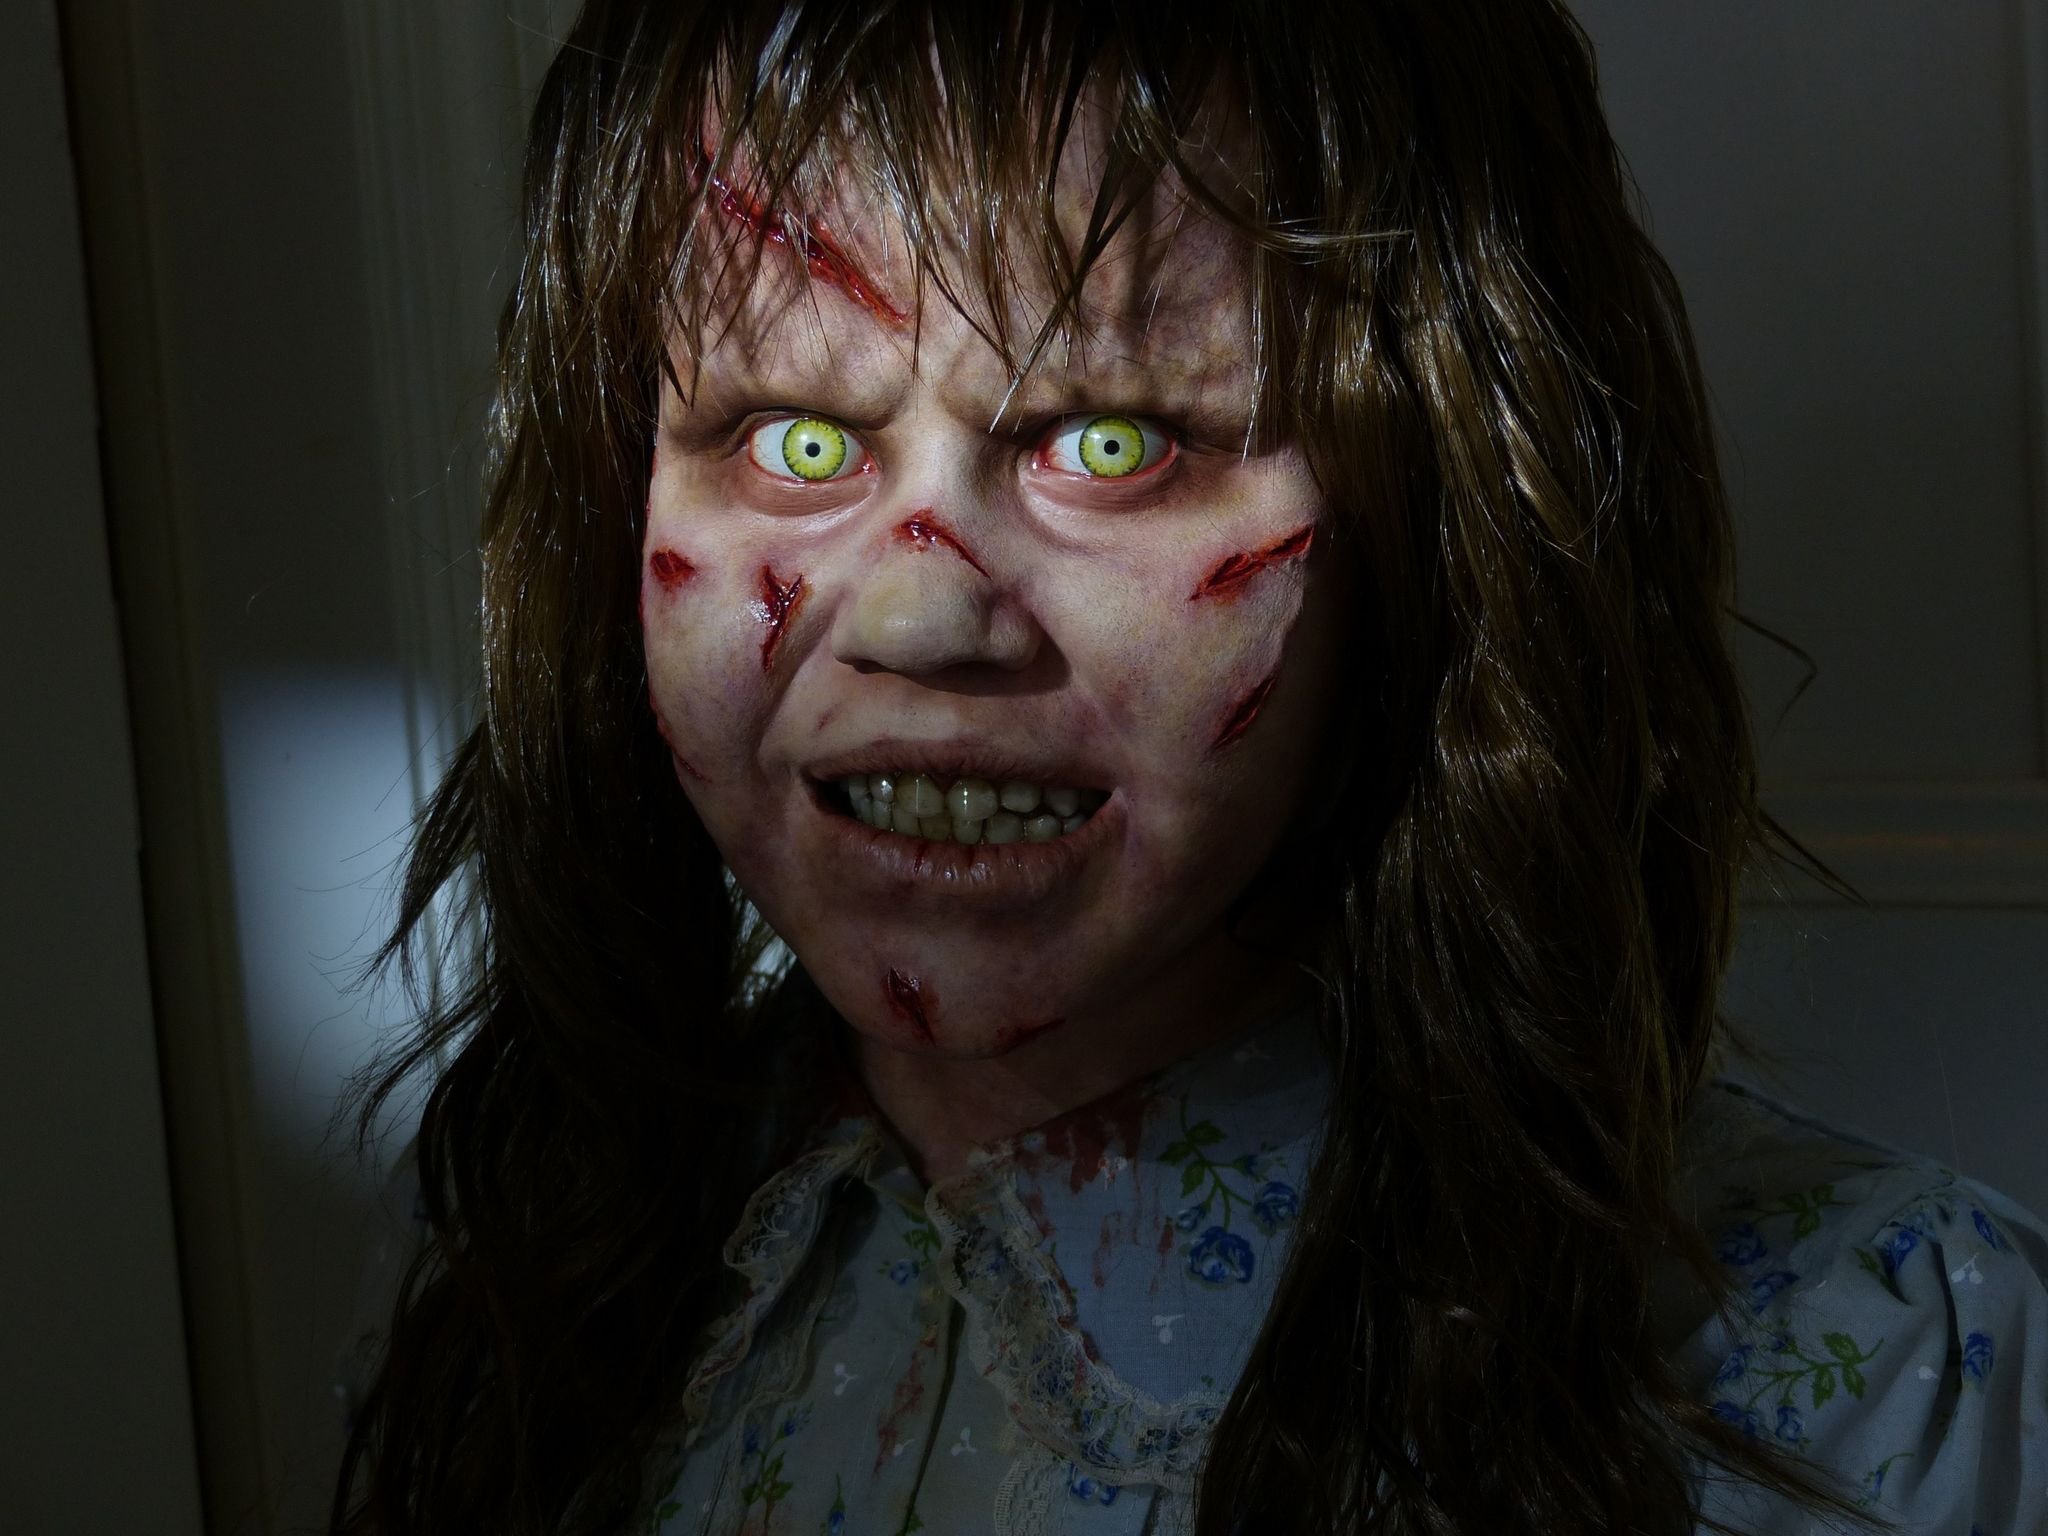 Novo "O Exorcista" dará início a uma trilogia inspirada no longa original (Foto: Reprodução/Warner Bros. Pictures)